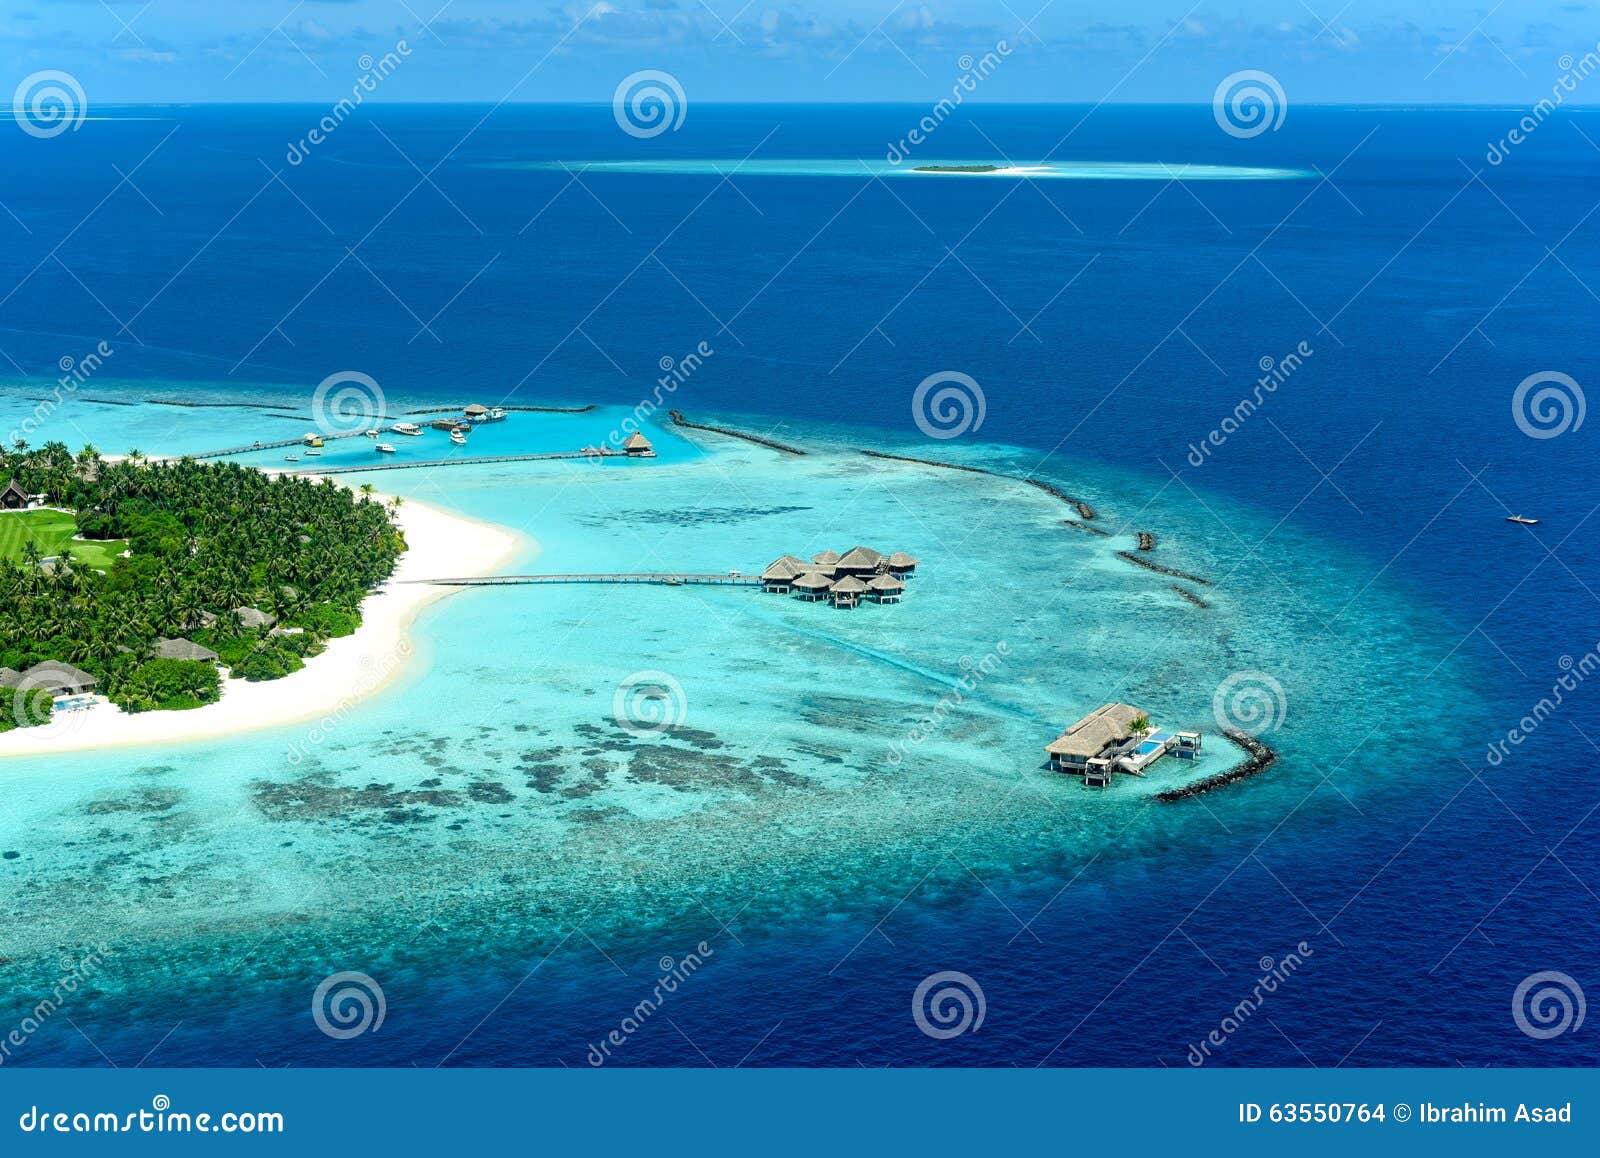 velaa private island noonu atoll maavelaavaru